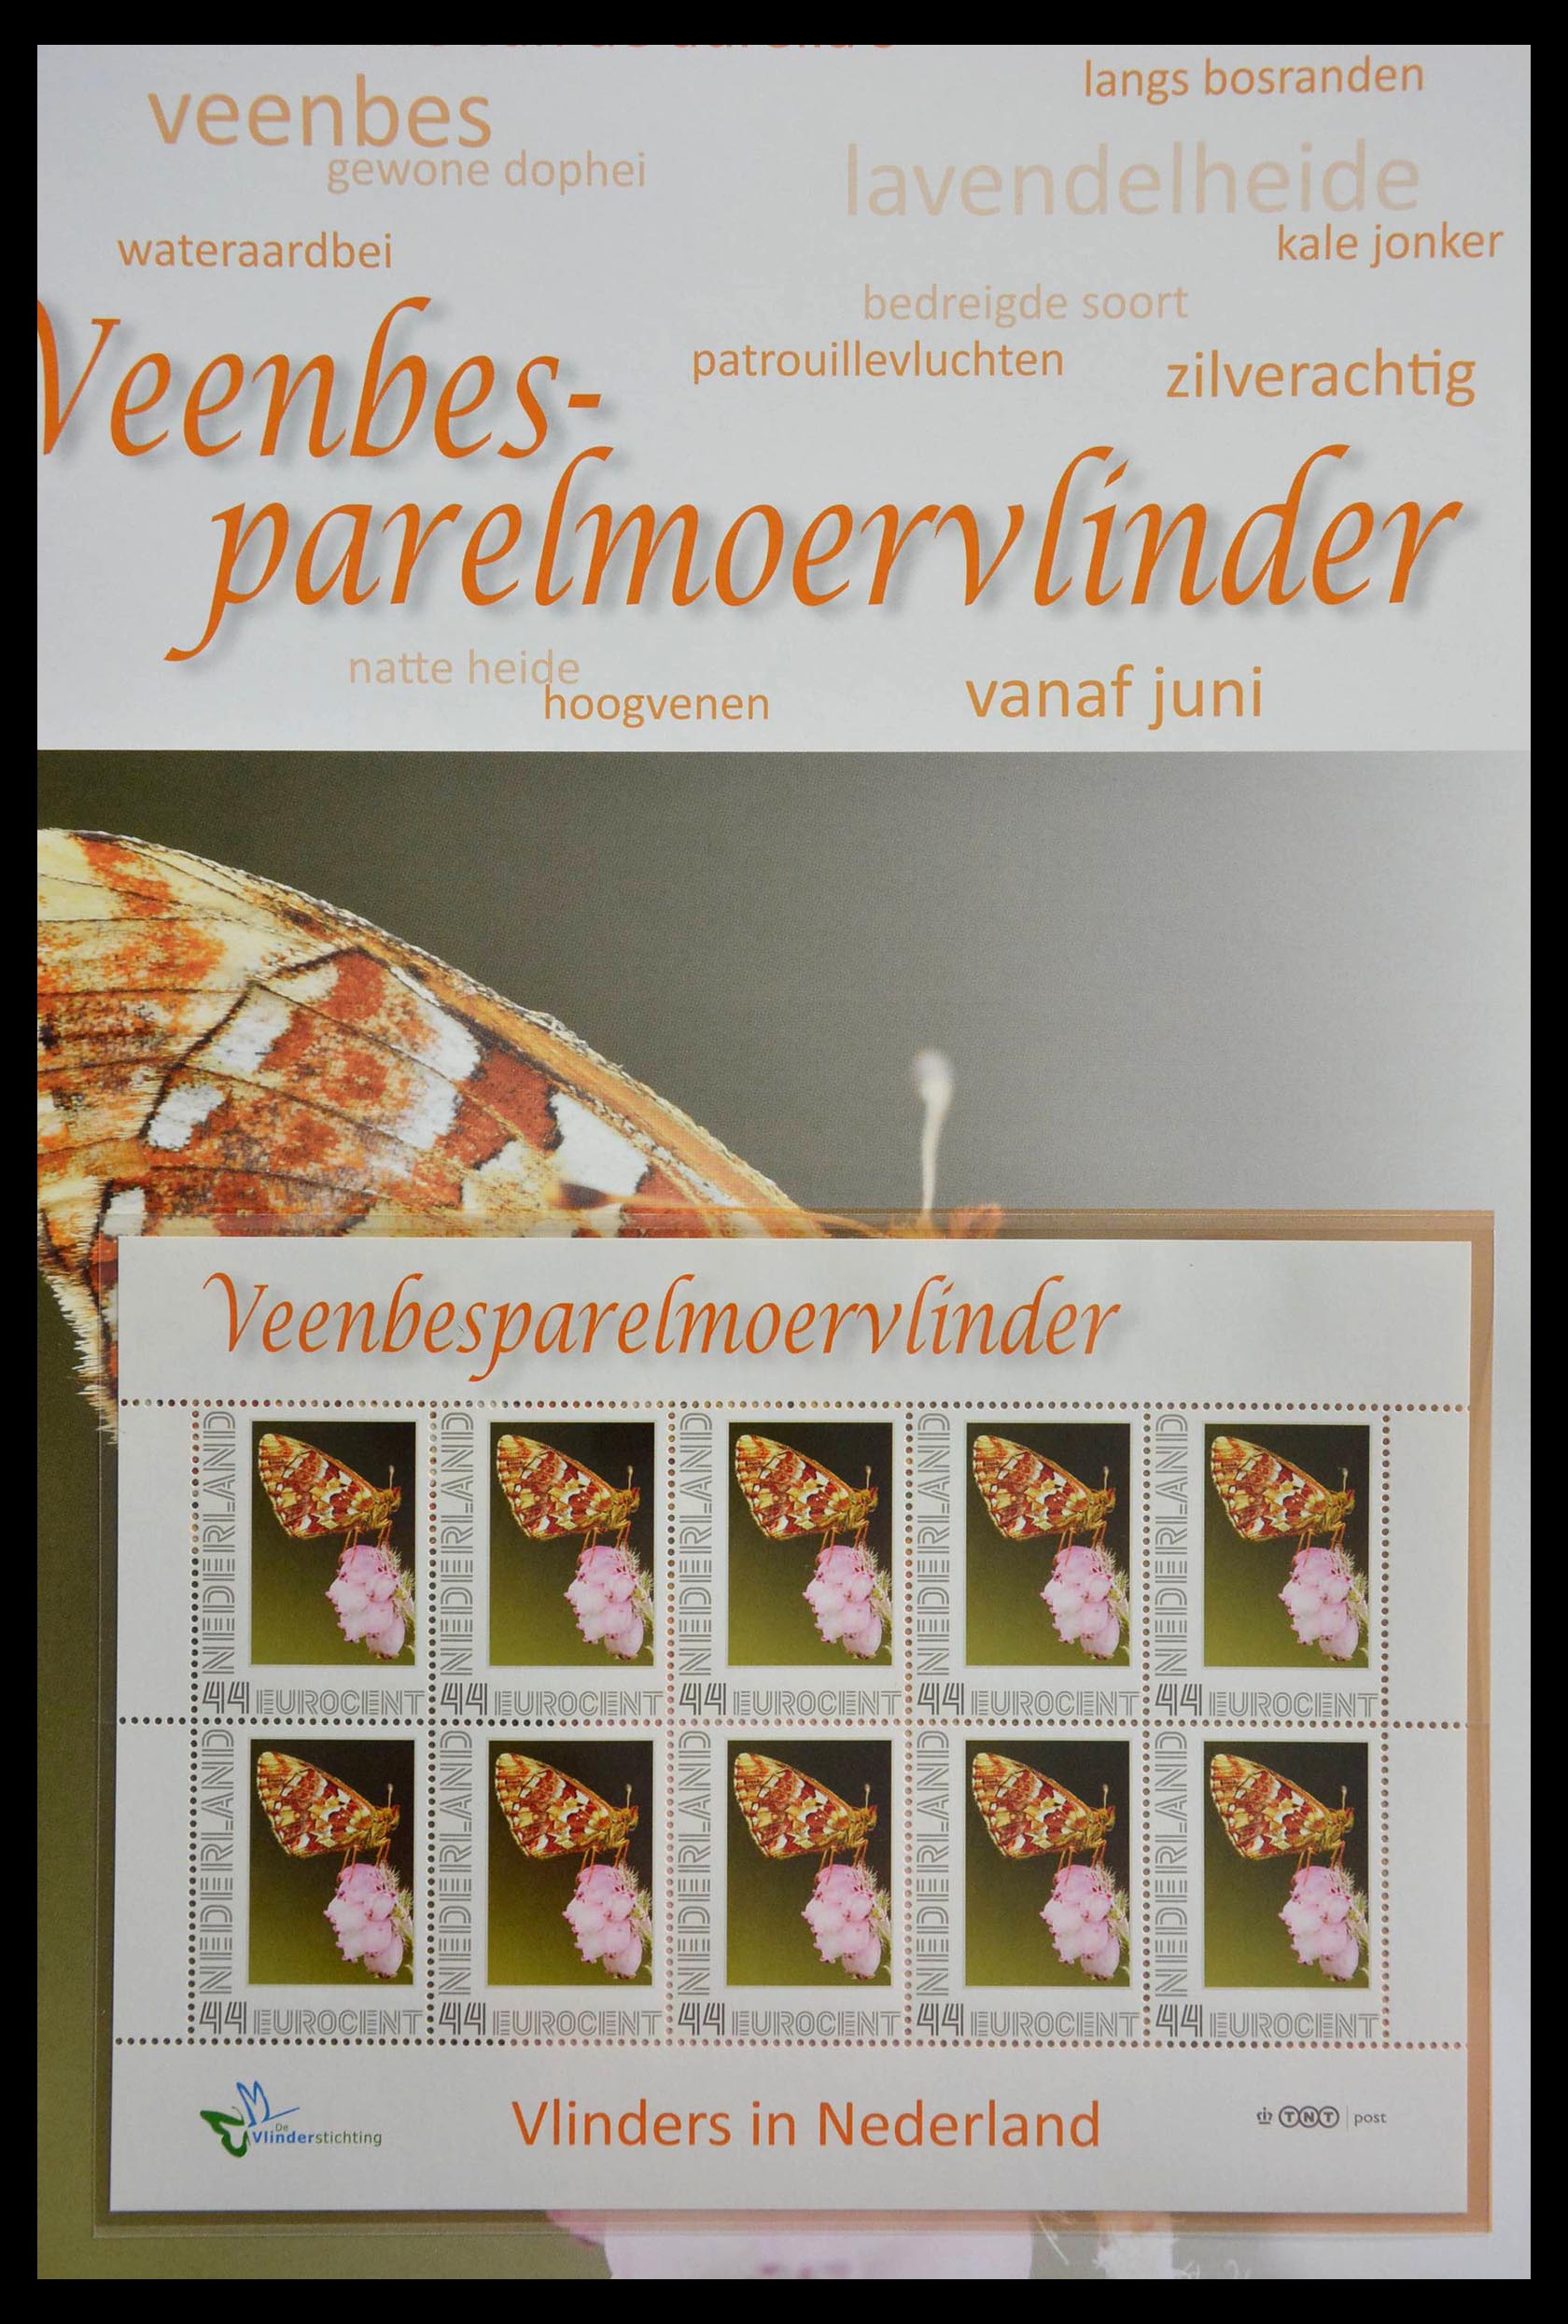 13105 018 - 13105 Vlinders in Nederland.